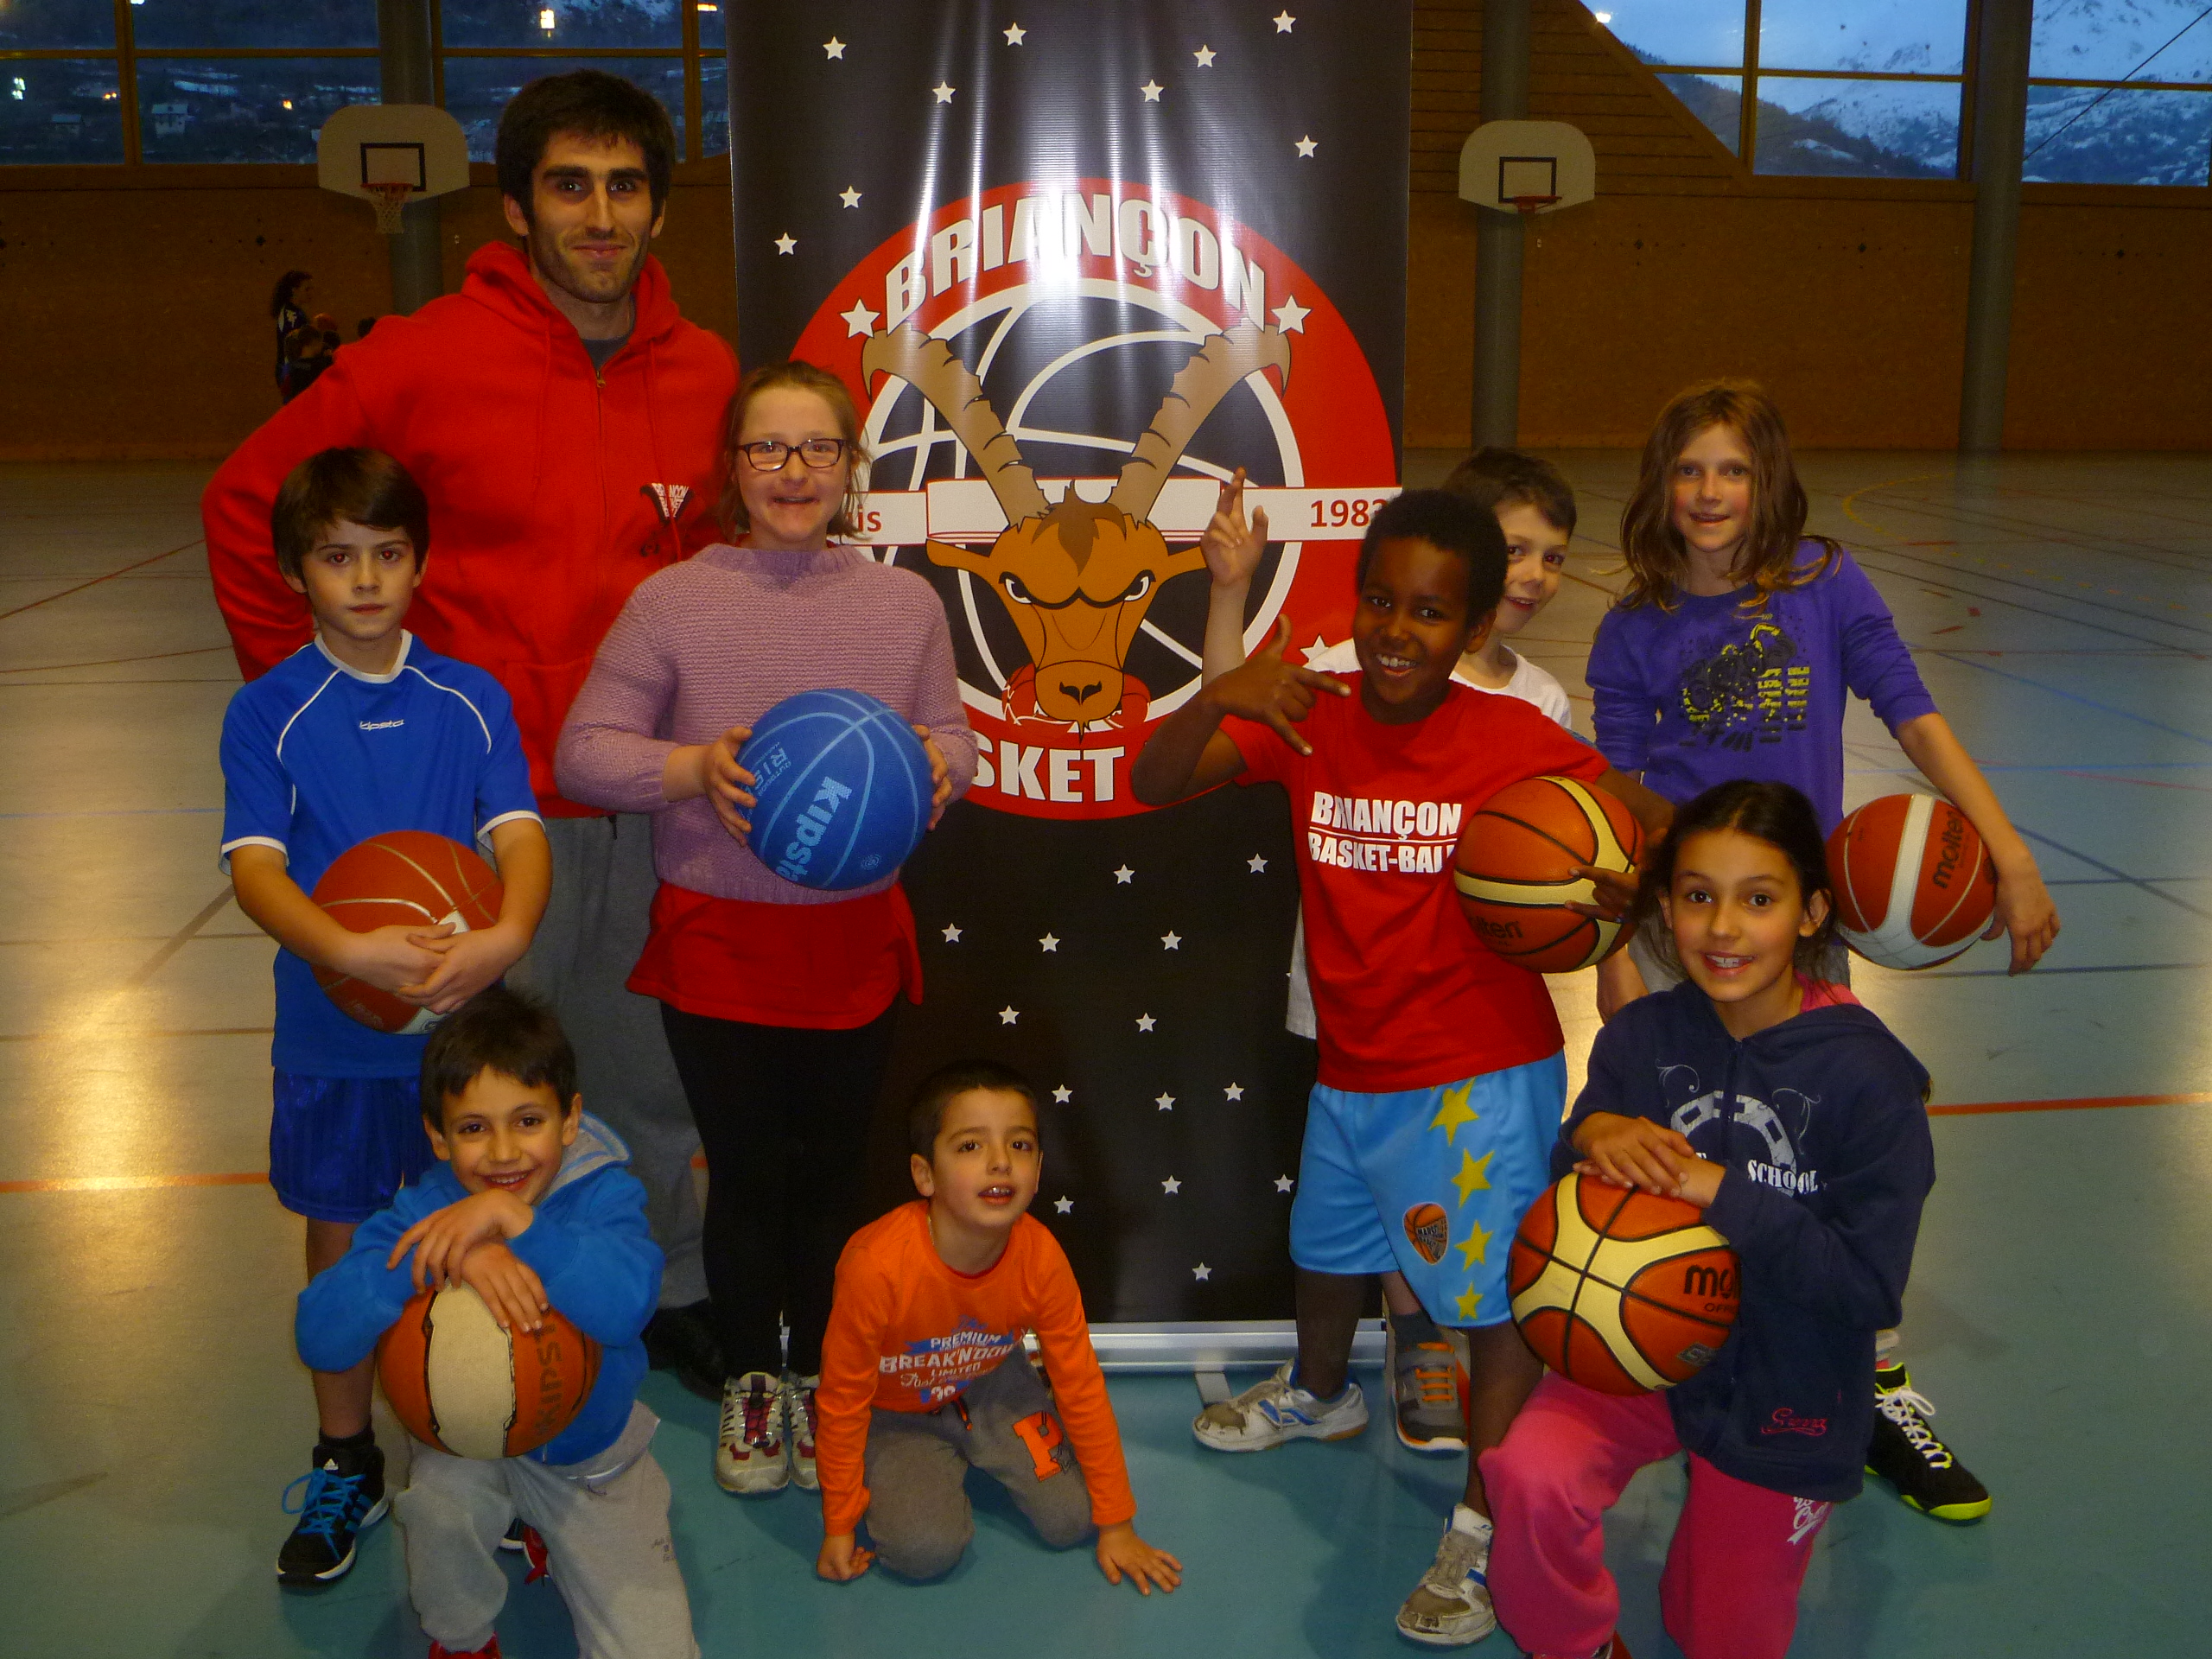 Club dynamique et bondissant, le Basket-Club de Briançon se porte bien !